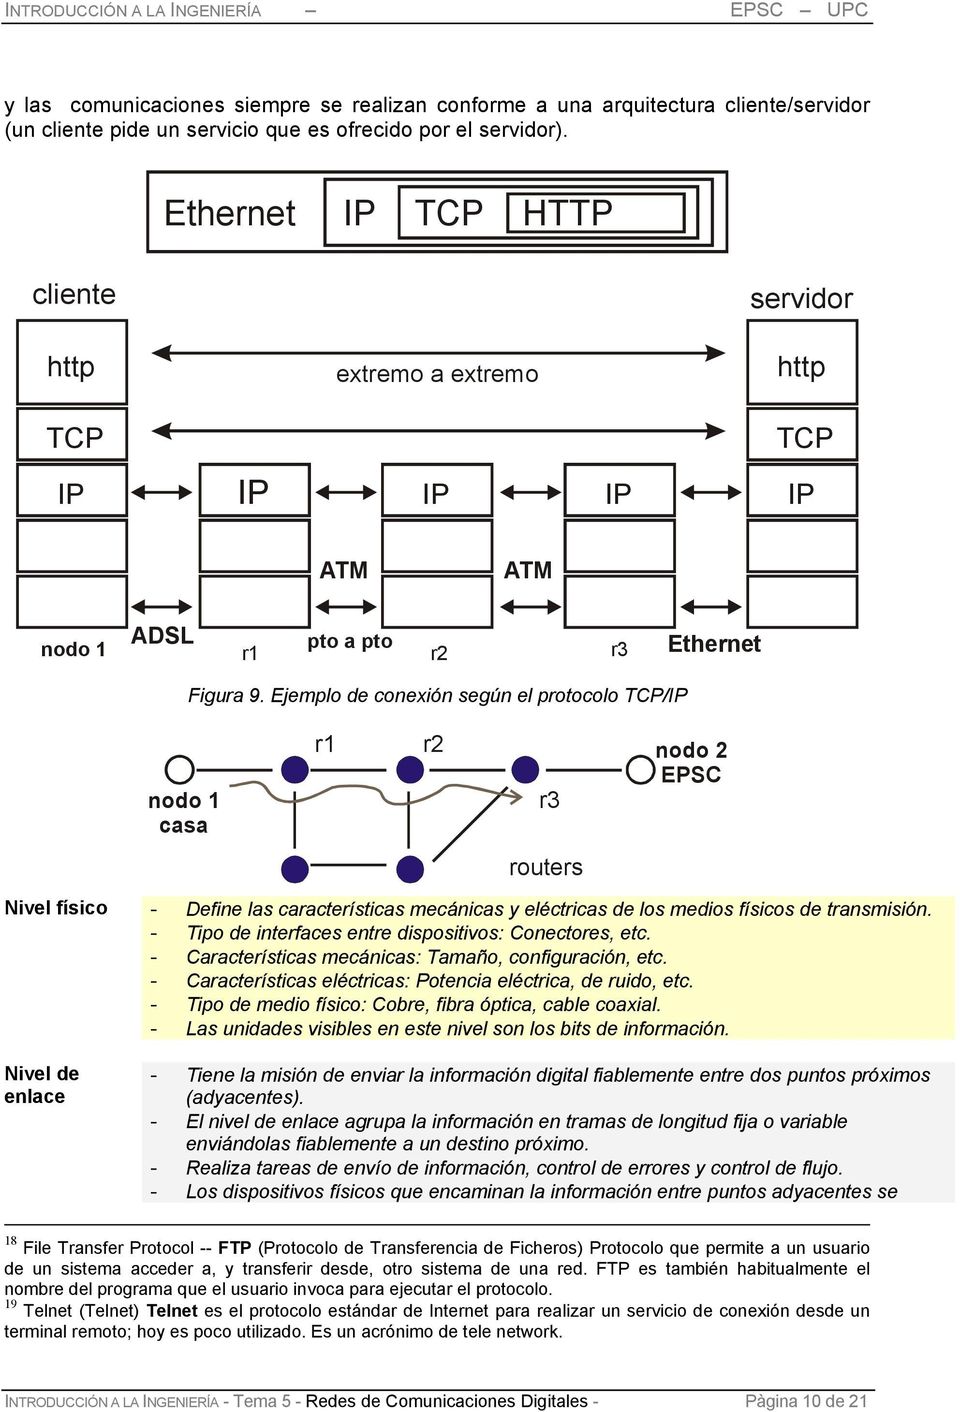 Ejemplo de conexión según el protocolo TCP/IP nodo 1 cs r1 r2 r3 nodo 2 EPSC routers Nivel físico - Define ls crcterístics mecánics y eléctrics de los medios físicos de trnsmisión.